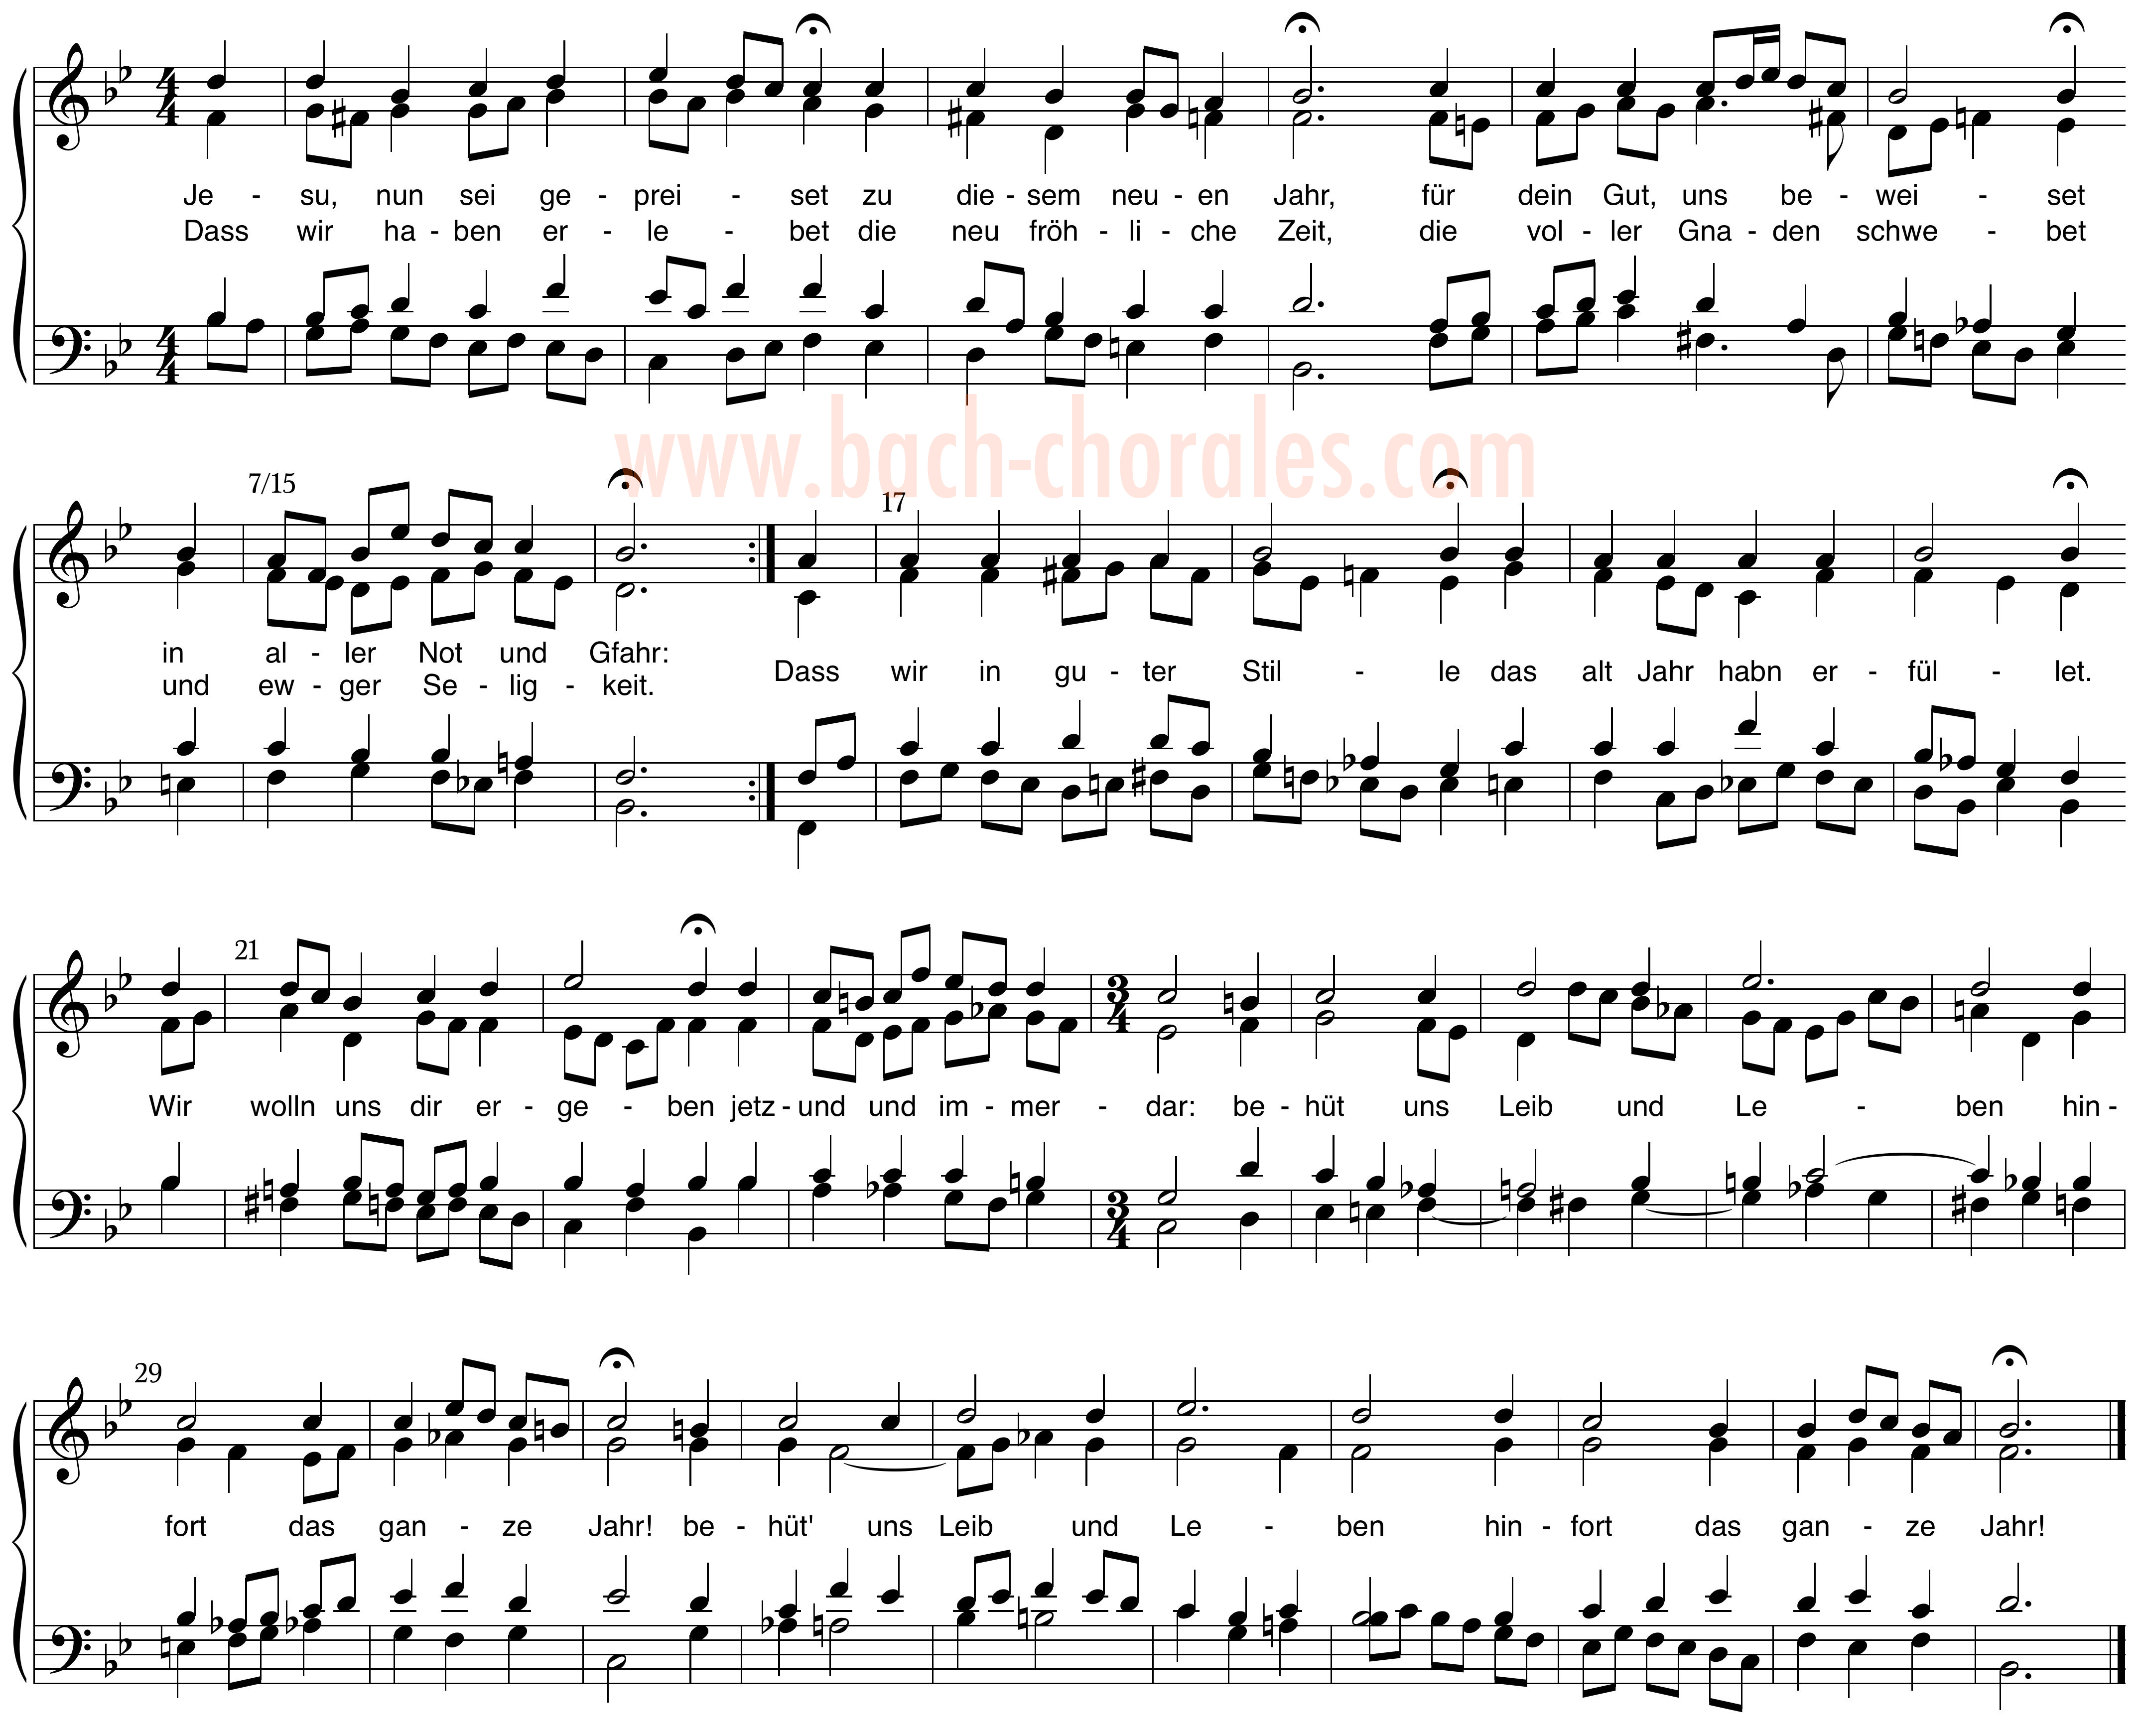 notenbeeld BWV 362 op https://www.bach-chorales.com/